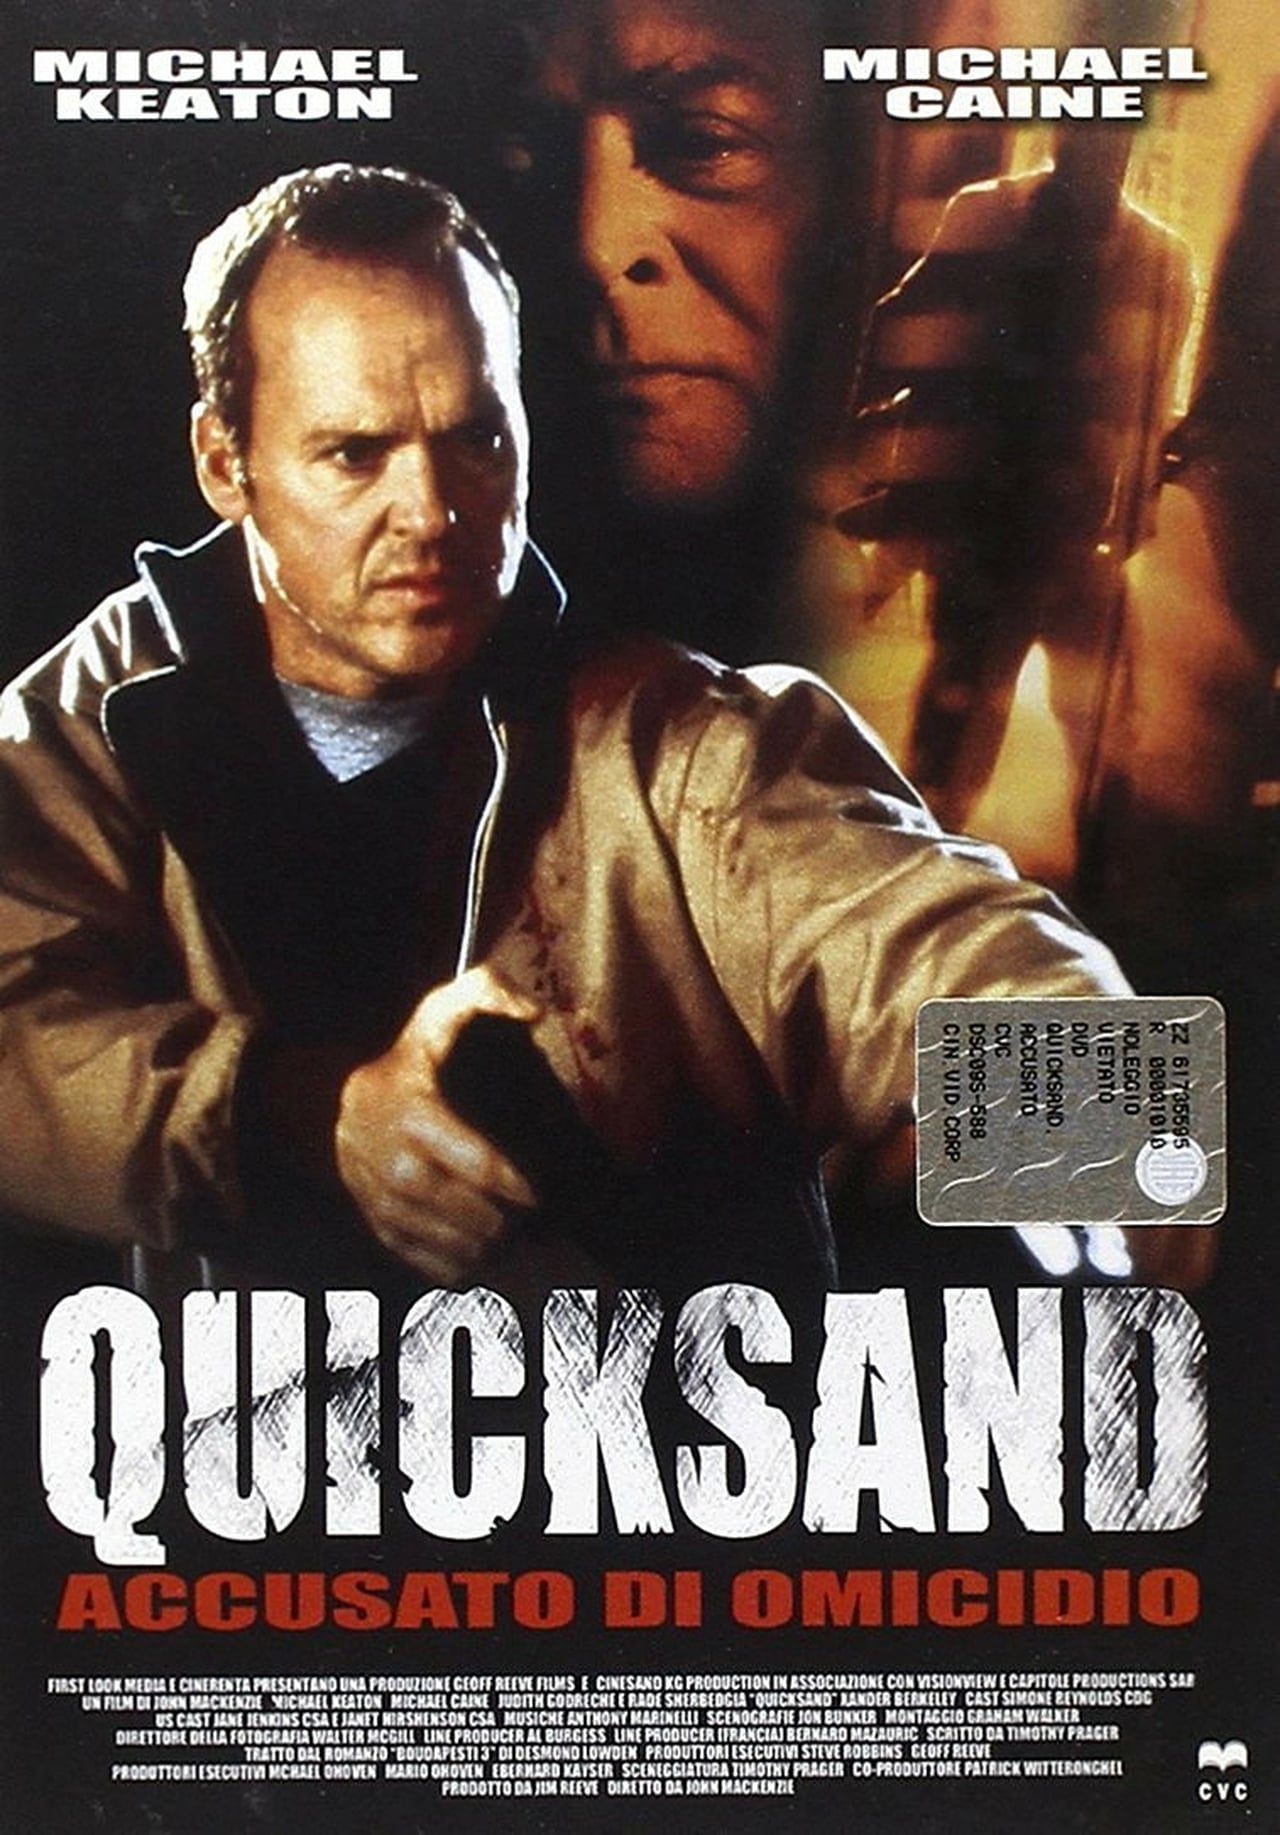 Plakat von "Quicksand - Gefangen im Treibsand"